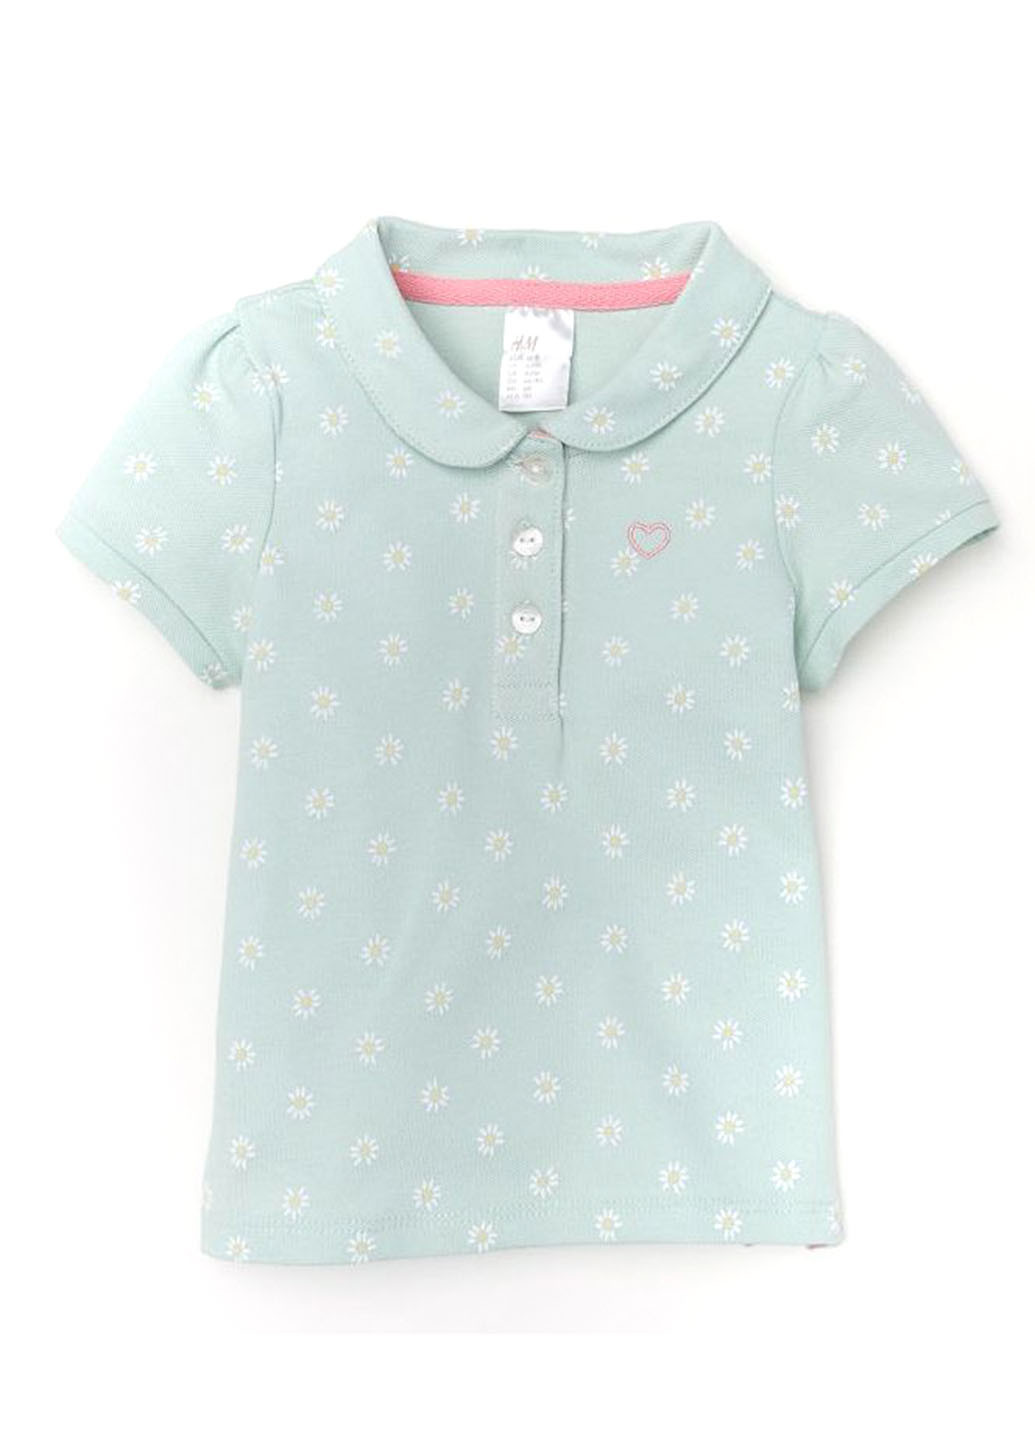 Светло-голубой детская футболка-поло для девочки H&M с цветочным принтом